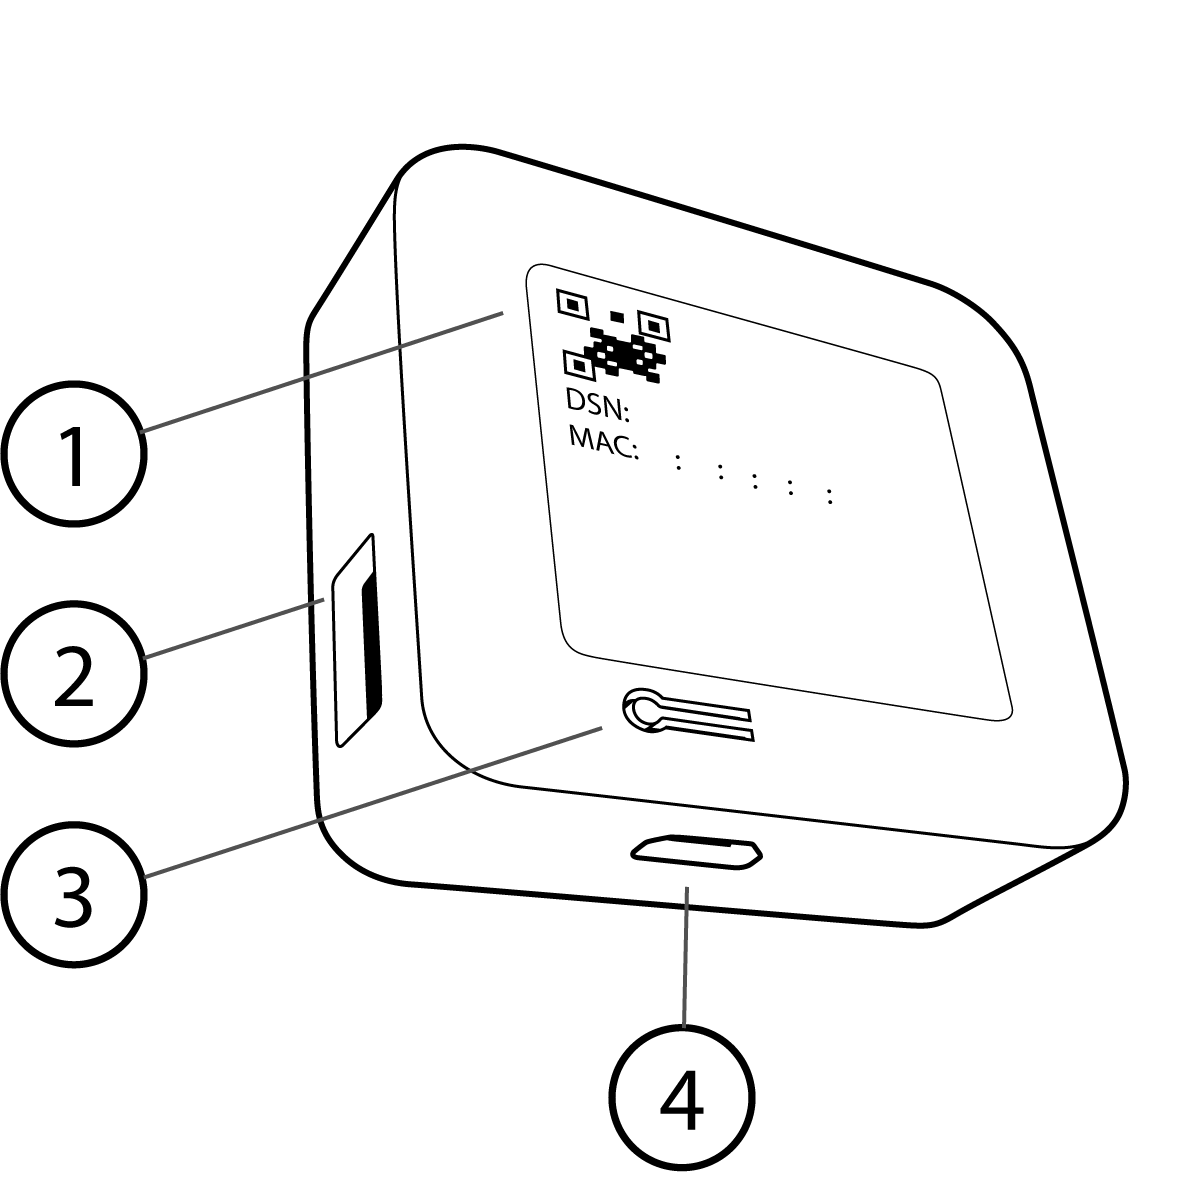 image de l'arrière d'un module de synchronisation 2 montrant le code QR du numéro de série, le port USB-A pour un disque jusqu'à 256 Go, le bouton de réinitialisation à l'arrière du module de synchronisation et le port d'alimentation micro USB